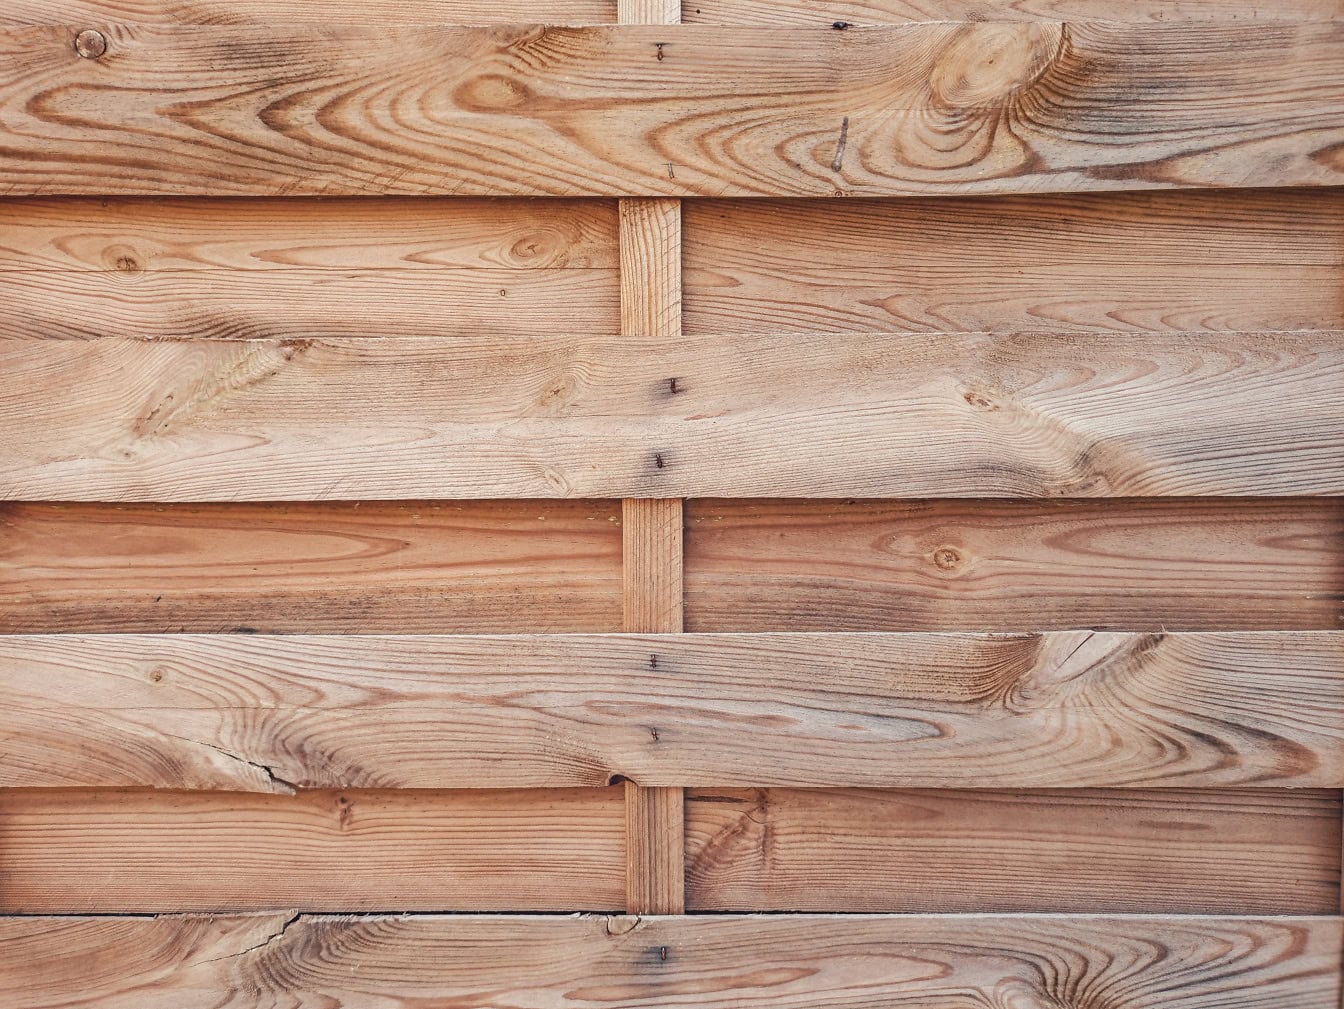 Texture d’une planche de bois faite de fines lattes de bois dur empilées horizontalement avec des nœuds sur des planches